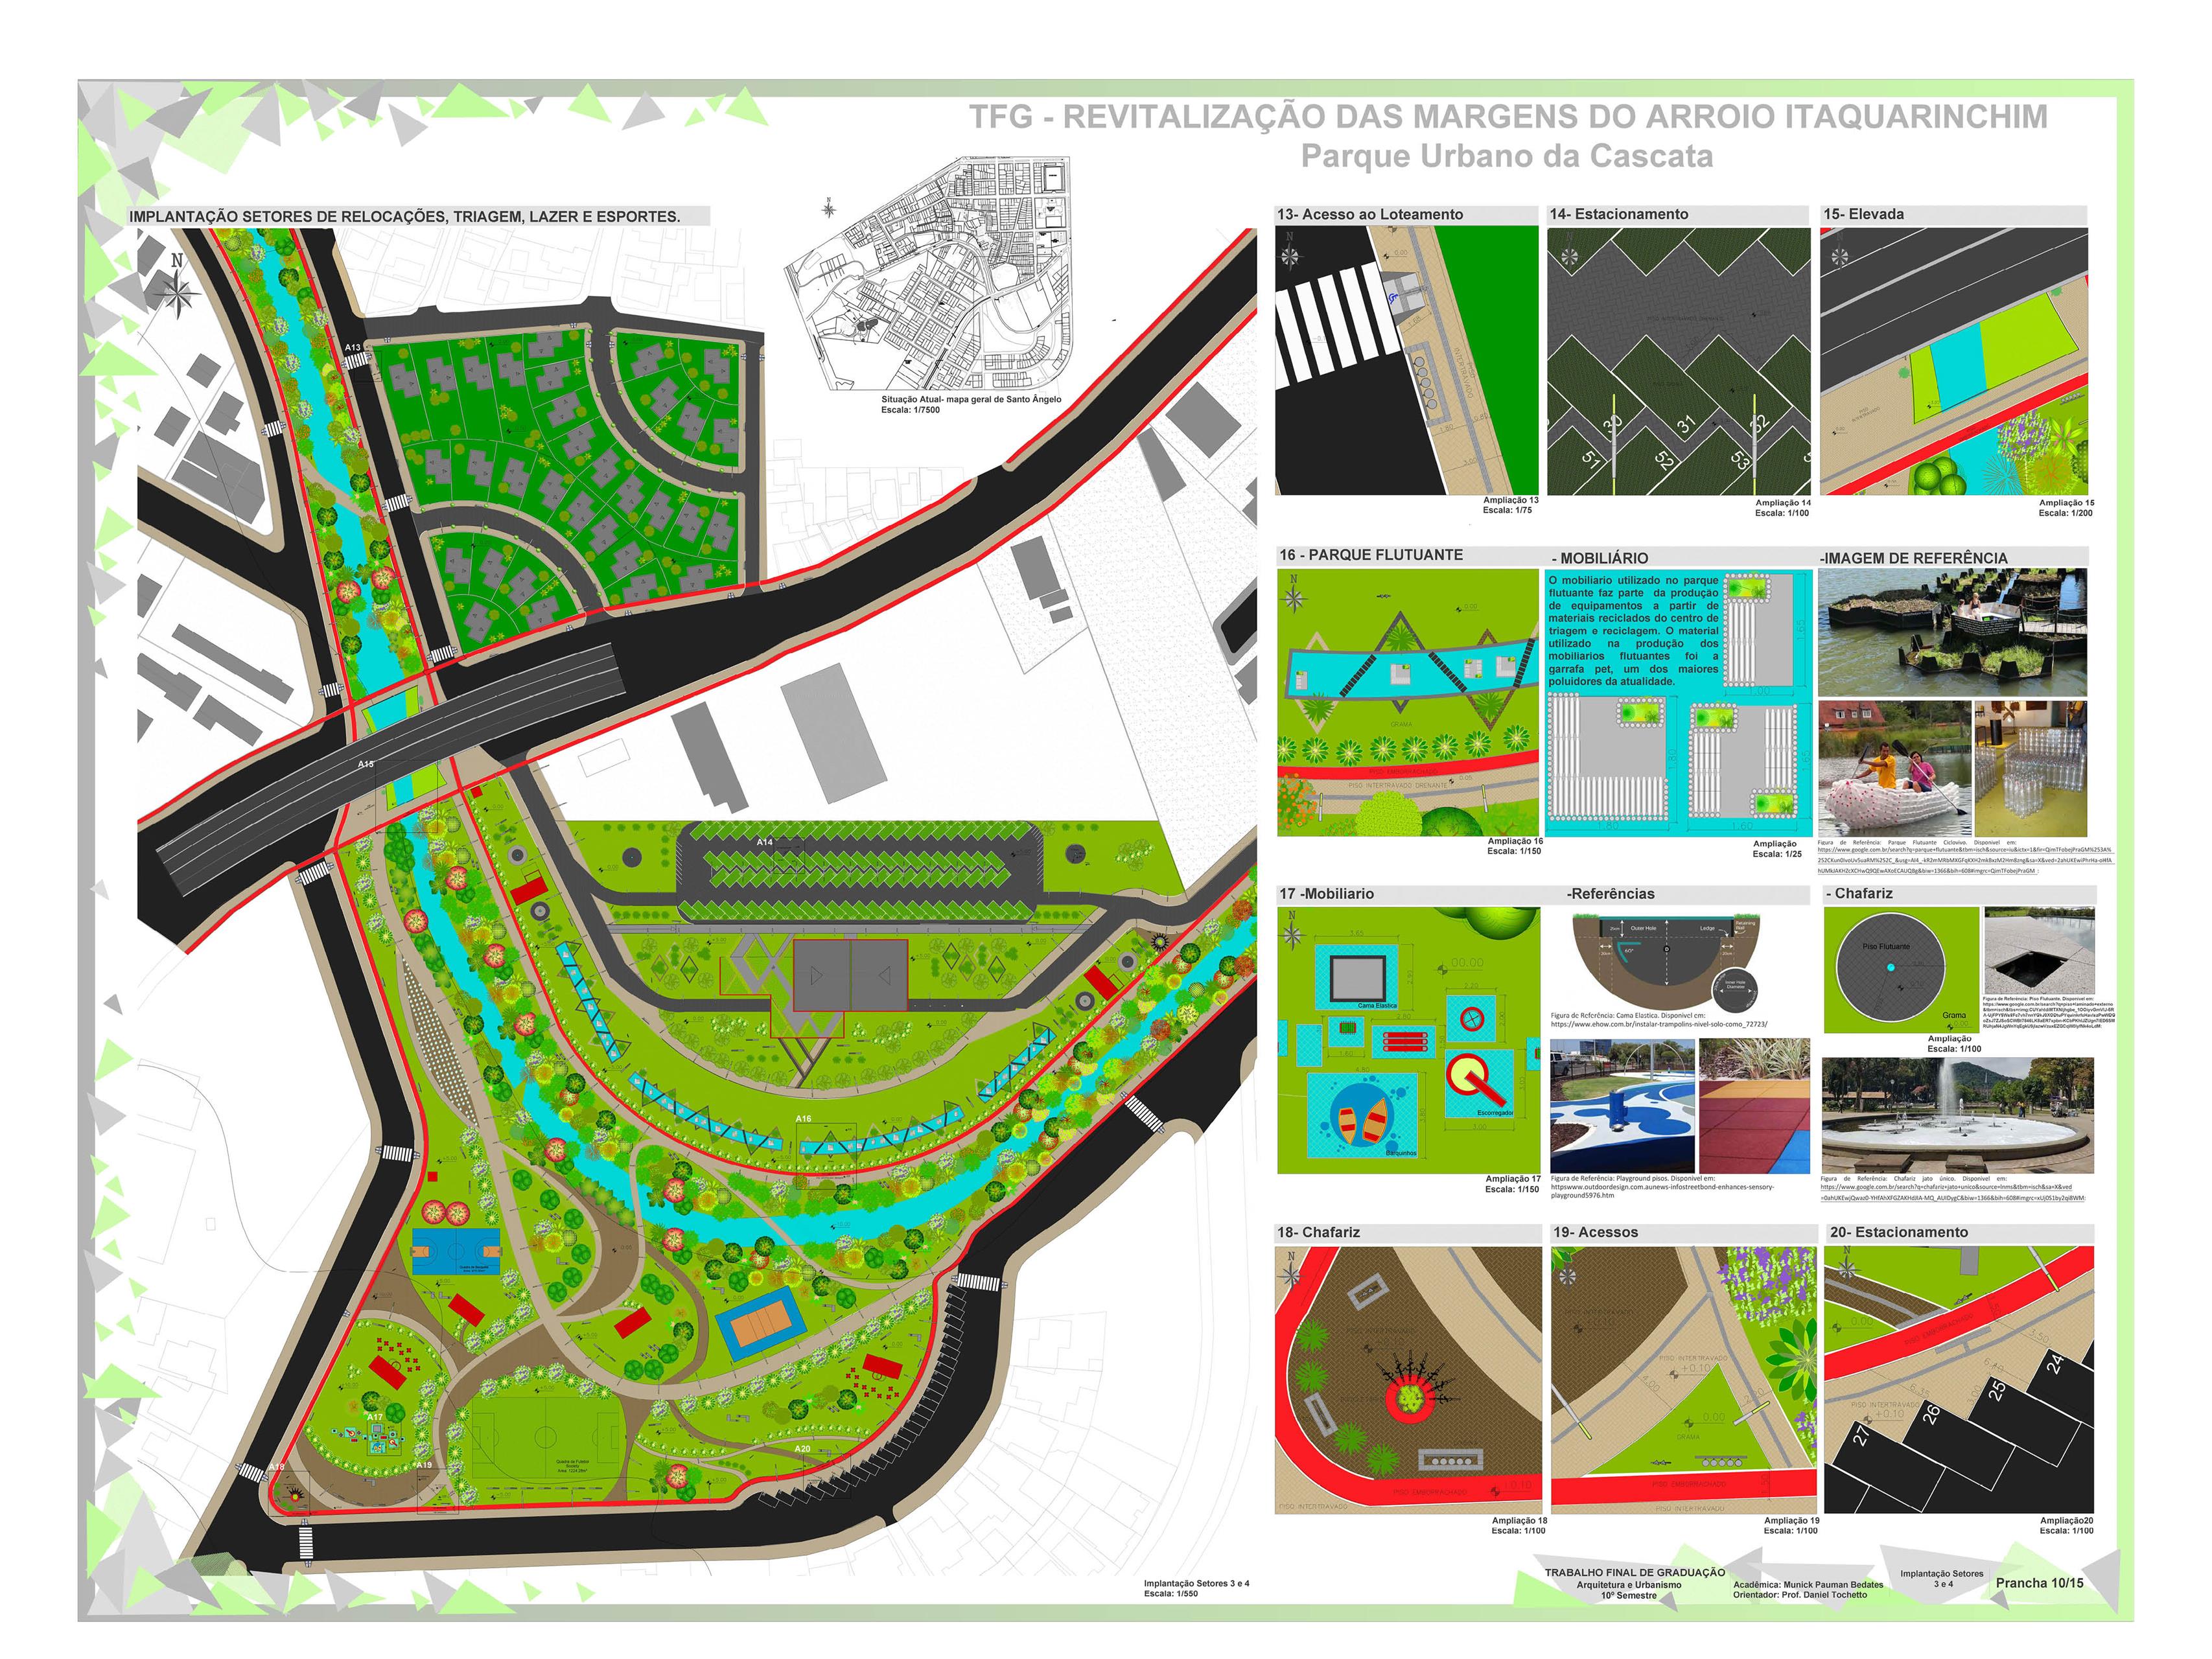 Revitalização das Margens do Arroio Itaquarinchim - Parque Urbano da Cascata9 (Copy)